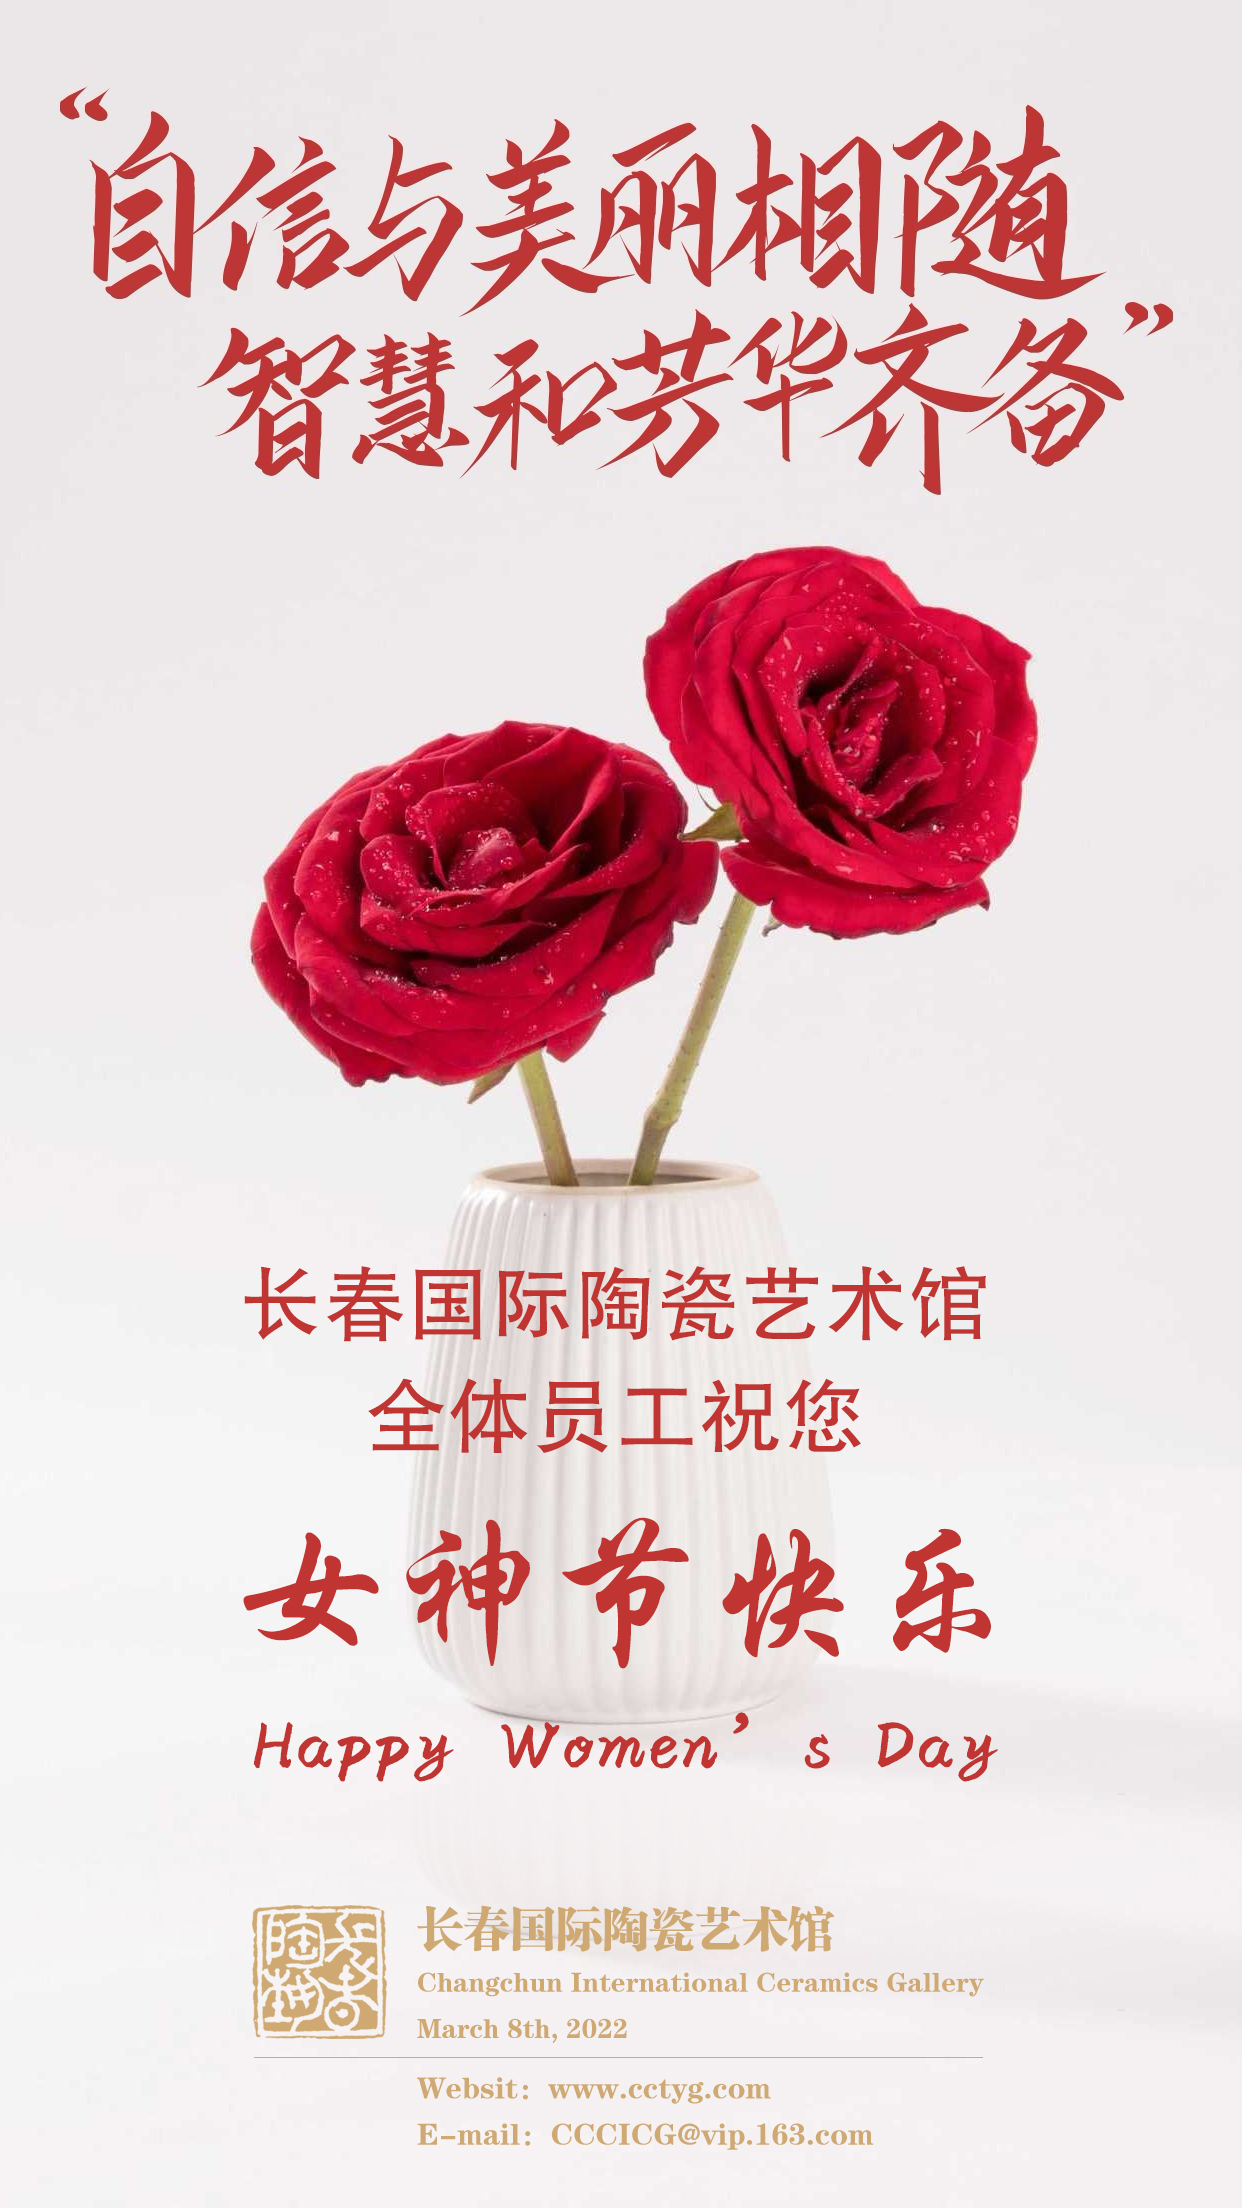 长春国际陶瓷艺术馆全体员工祝您女神节快乐